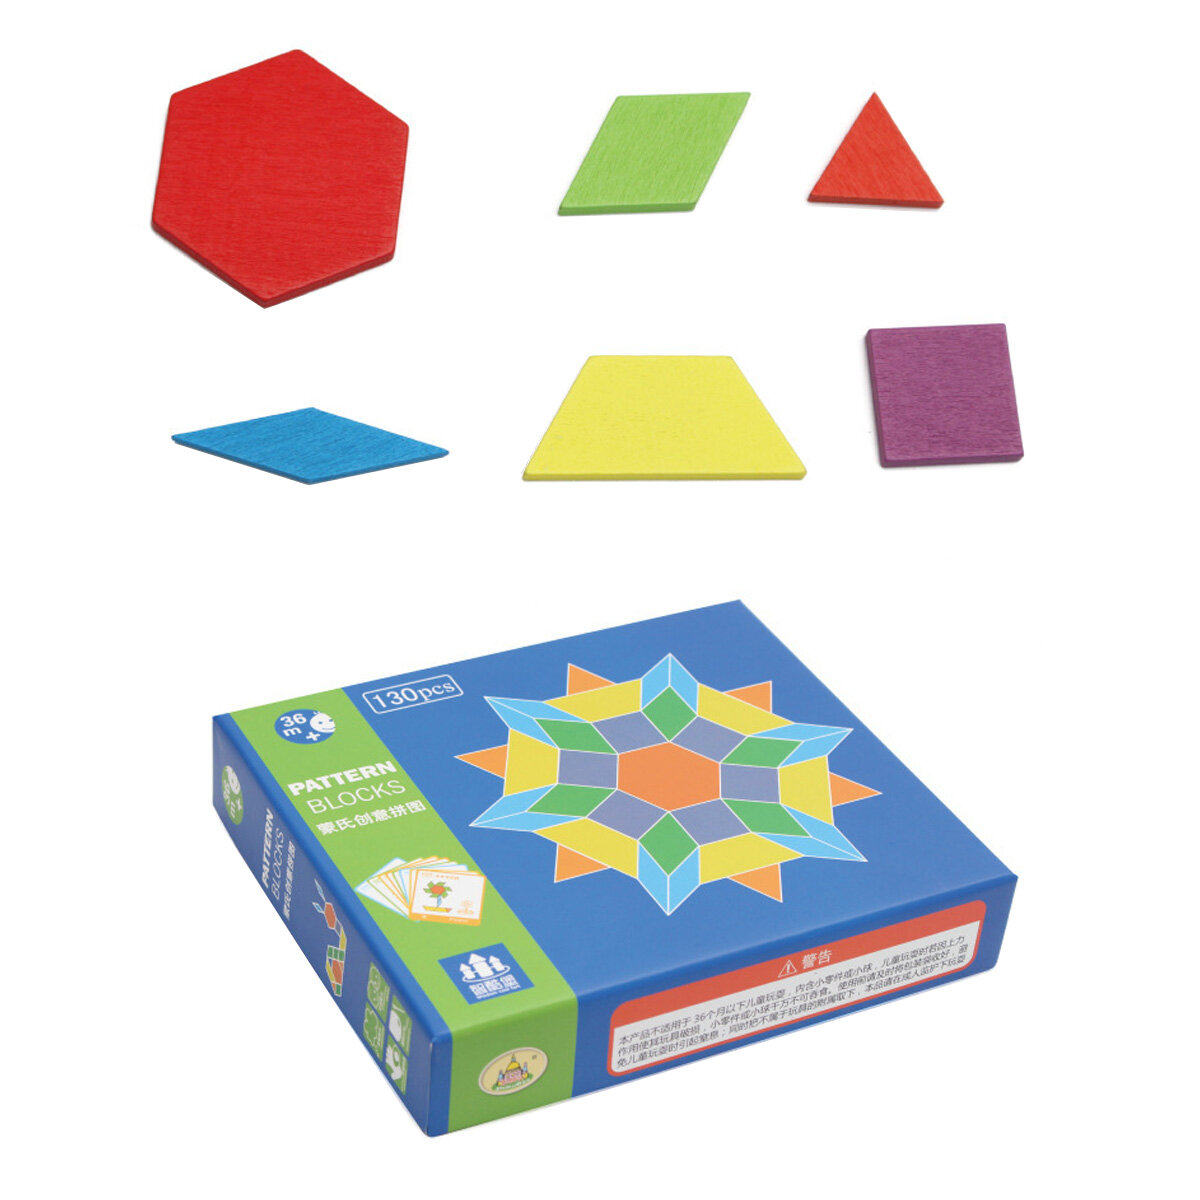 154 stks houten puzzel blokken set houten patroon blokken geometrische vorm puzzel tangram montessor